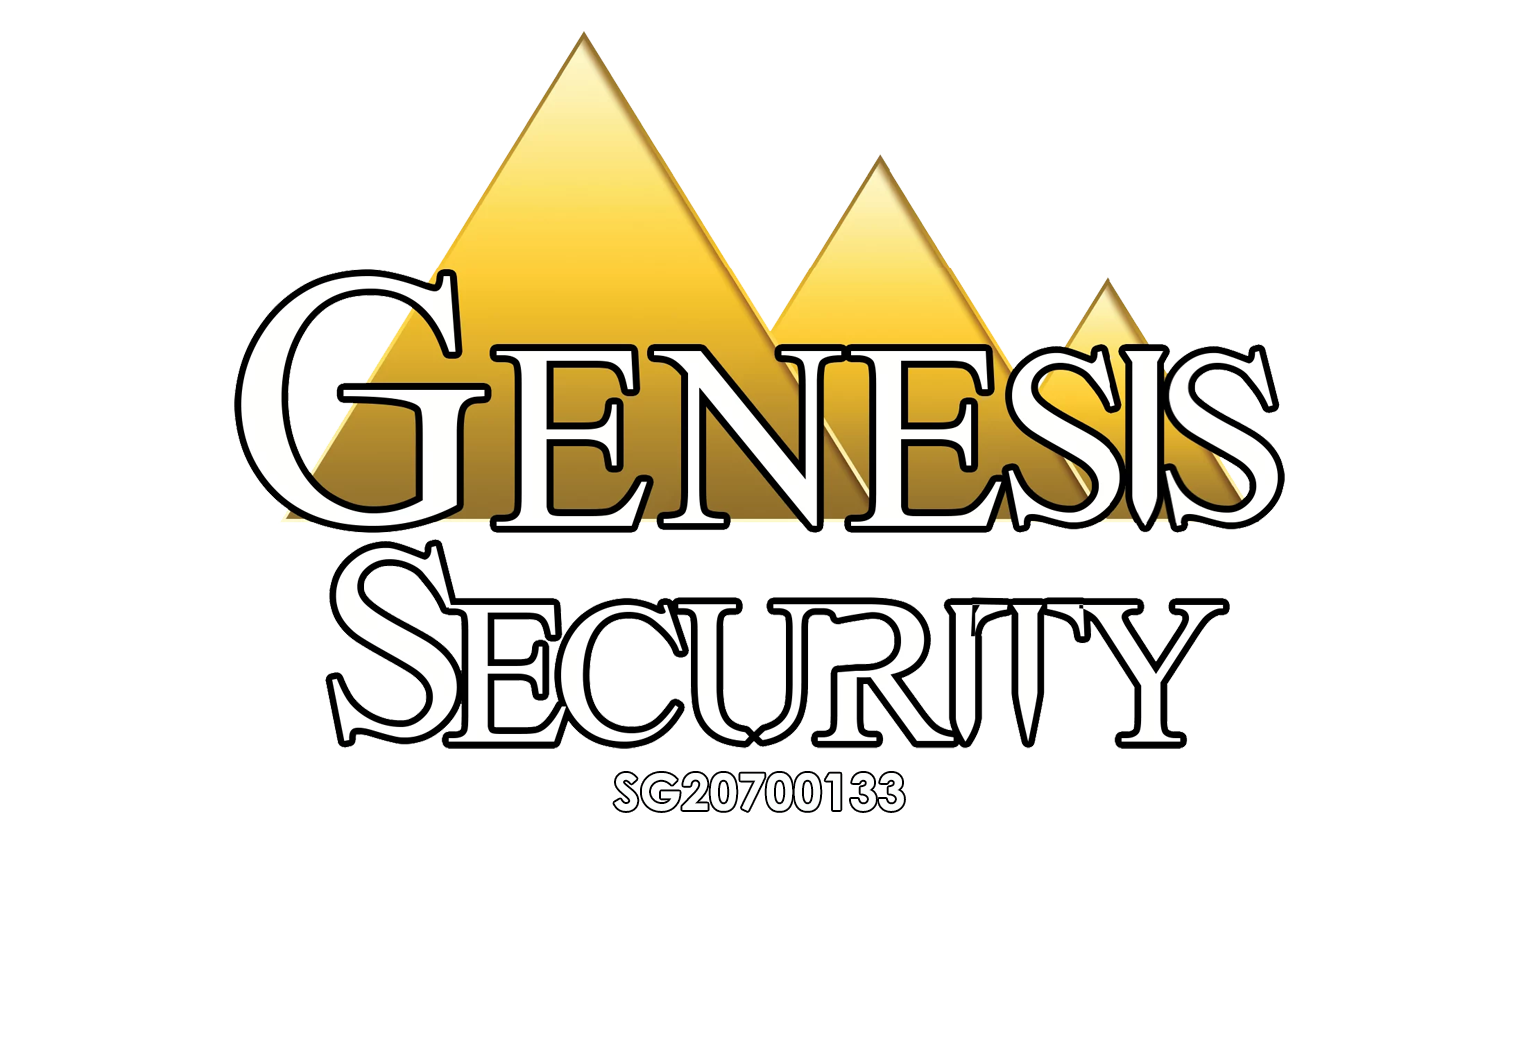 Genesis Security